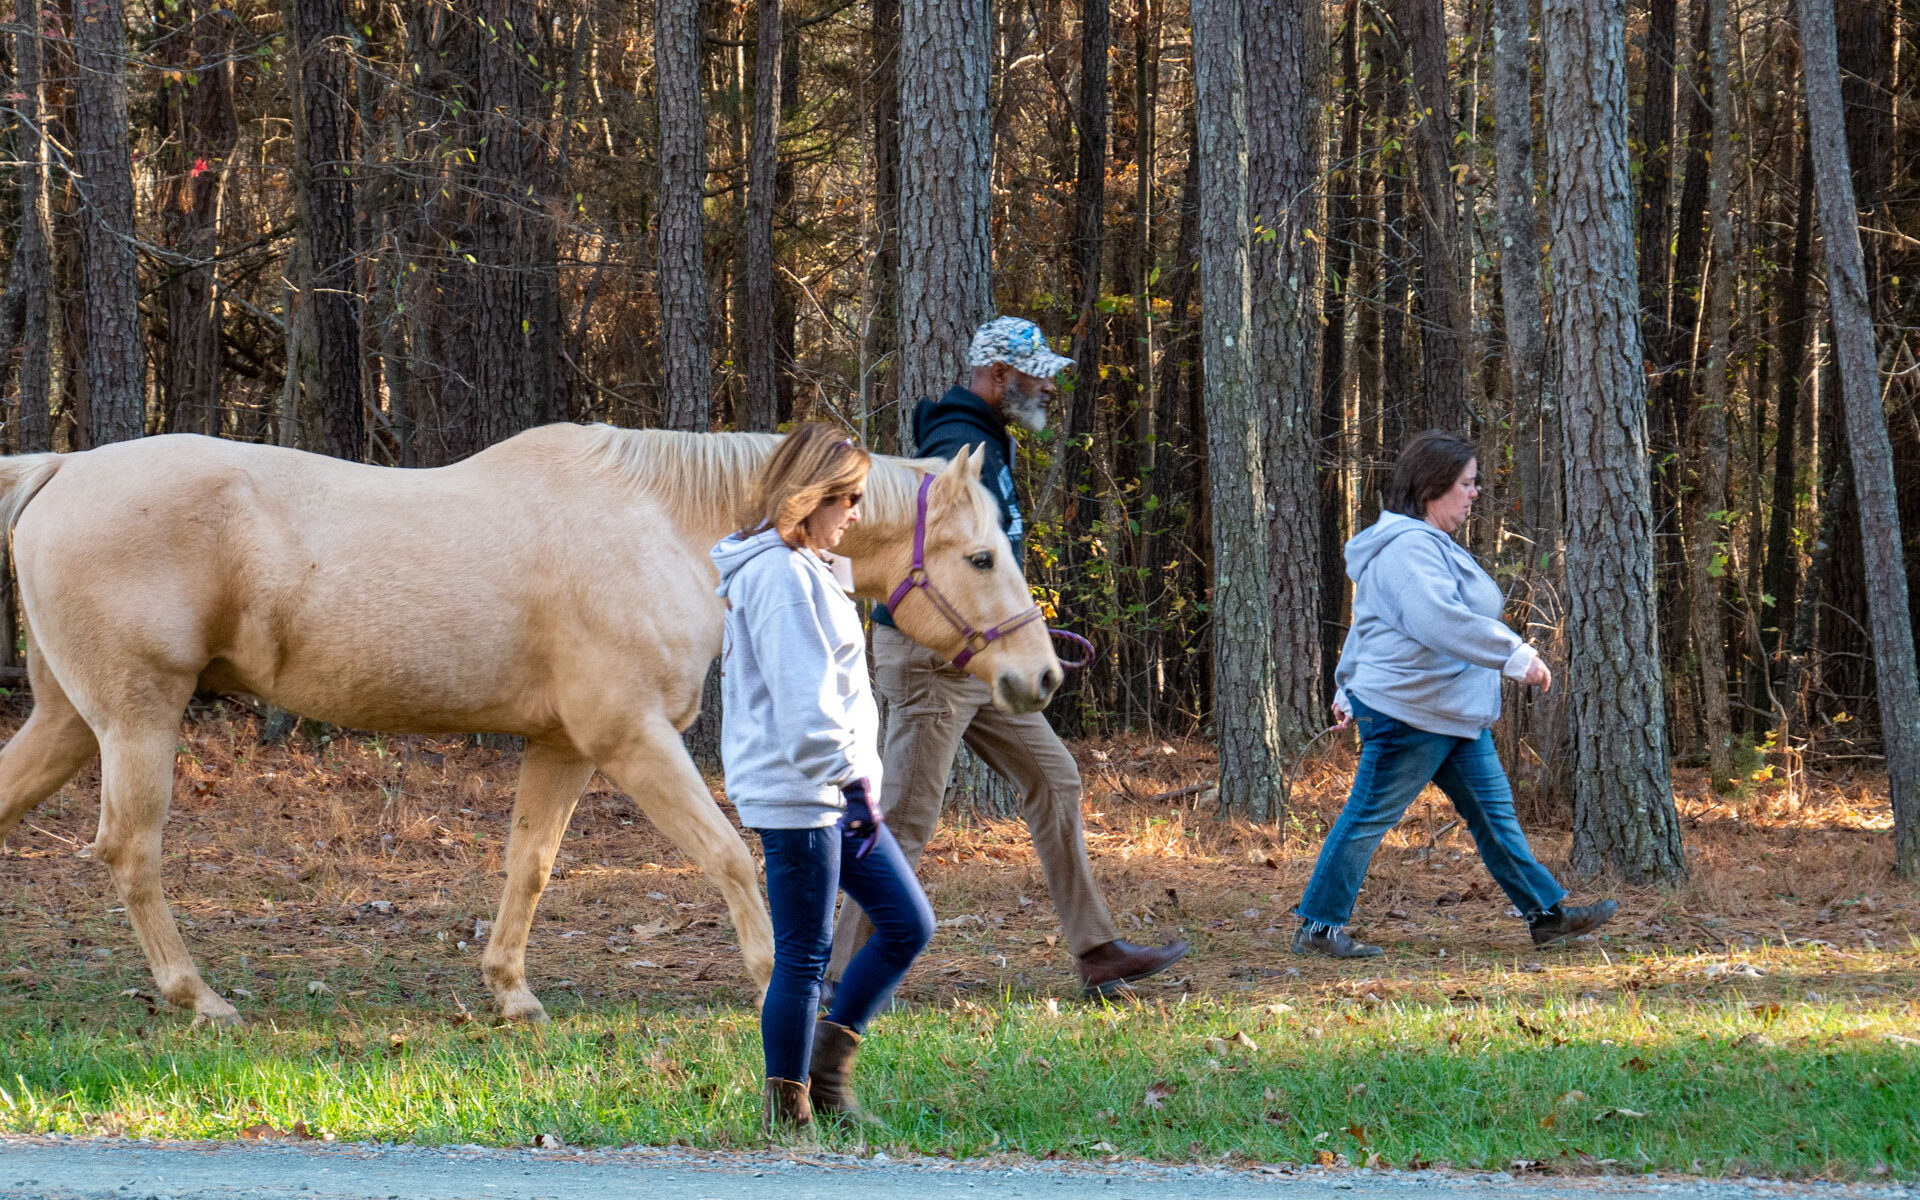 veteran, volunteers, and horse walking in the woods